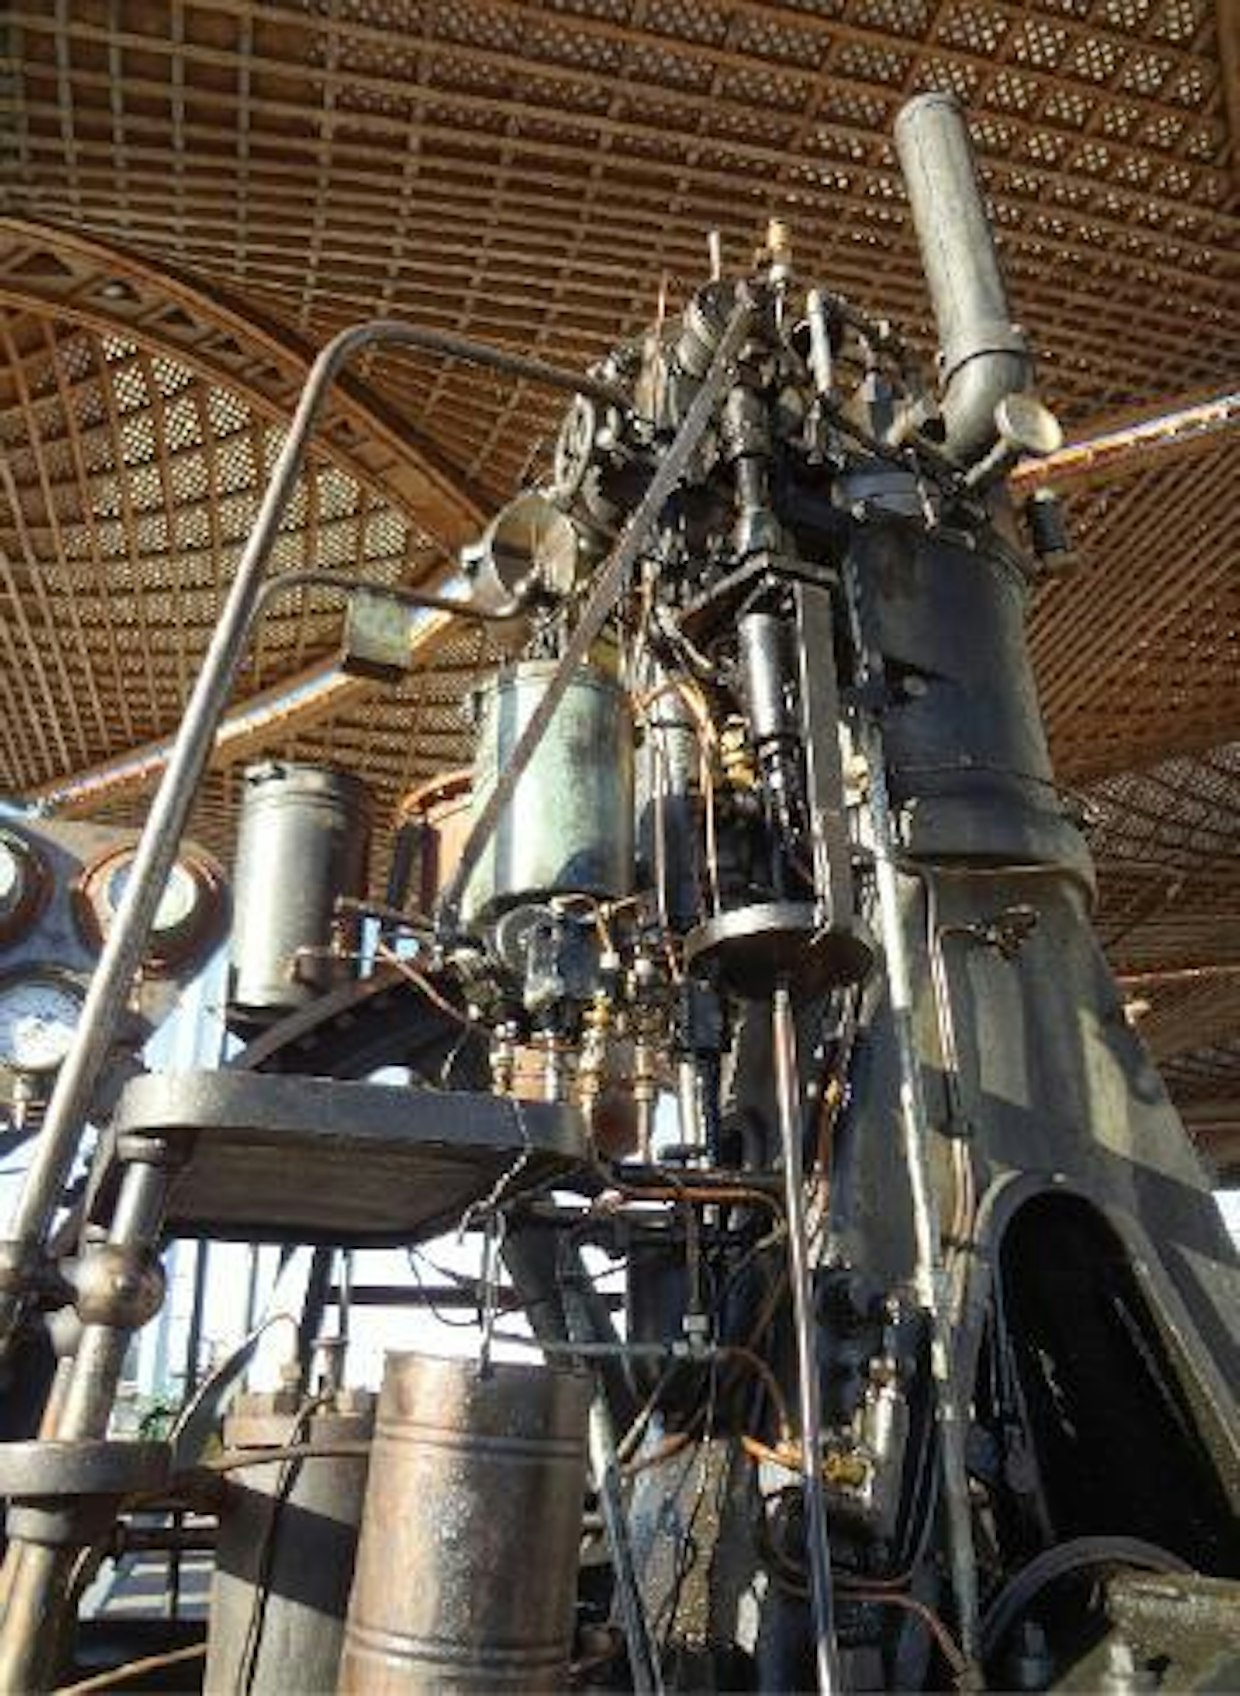 Agritechnica-näyttelyn yhteyteen oli Rudolf Dieselin muistoksi kerätty vanhoja dieselkäyttöisiä autoja ja traktoreita teemalla ”100 vuotta tehokkuutta”. Kuvassa on yksi maailman vanhimmista dieselmoottoreista. (JL)